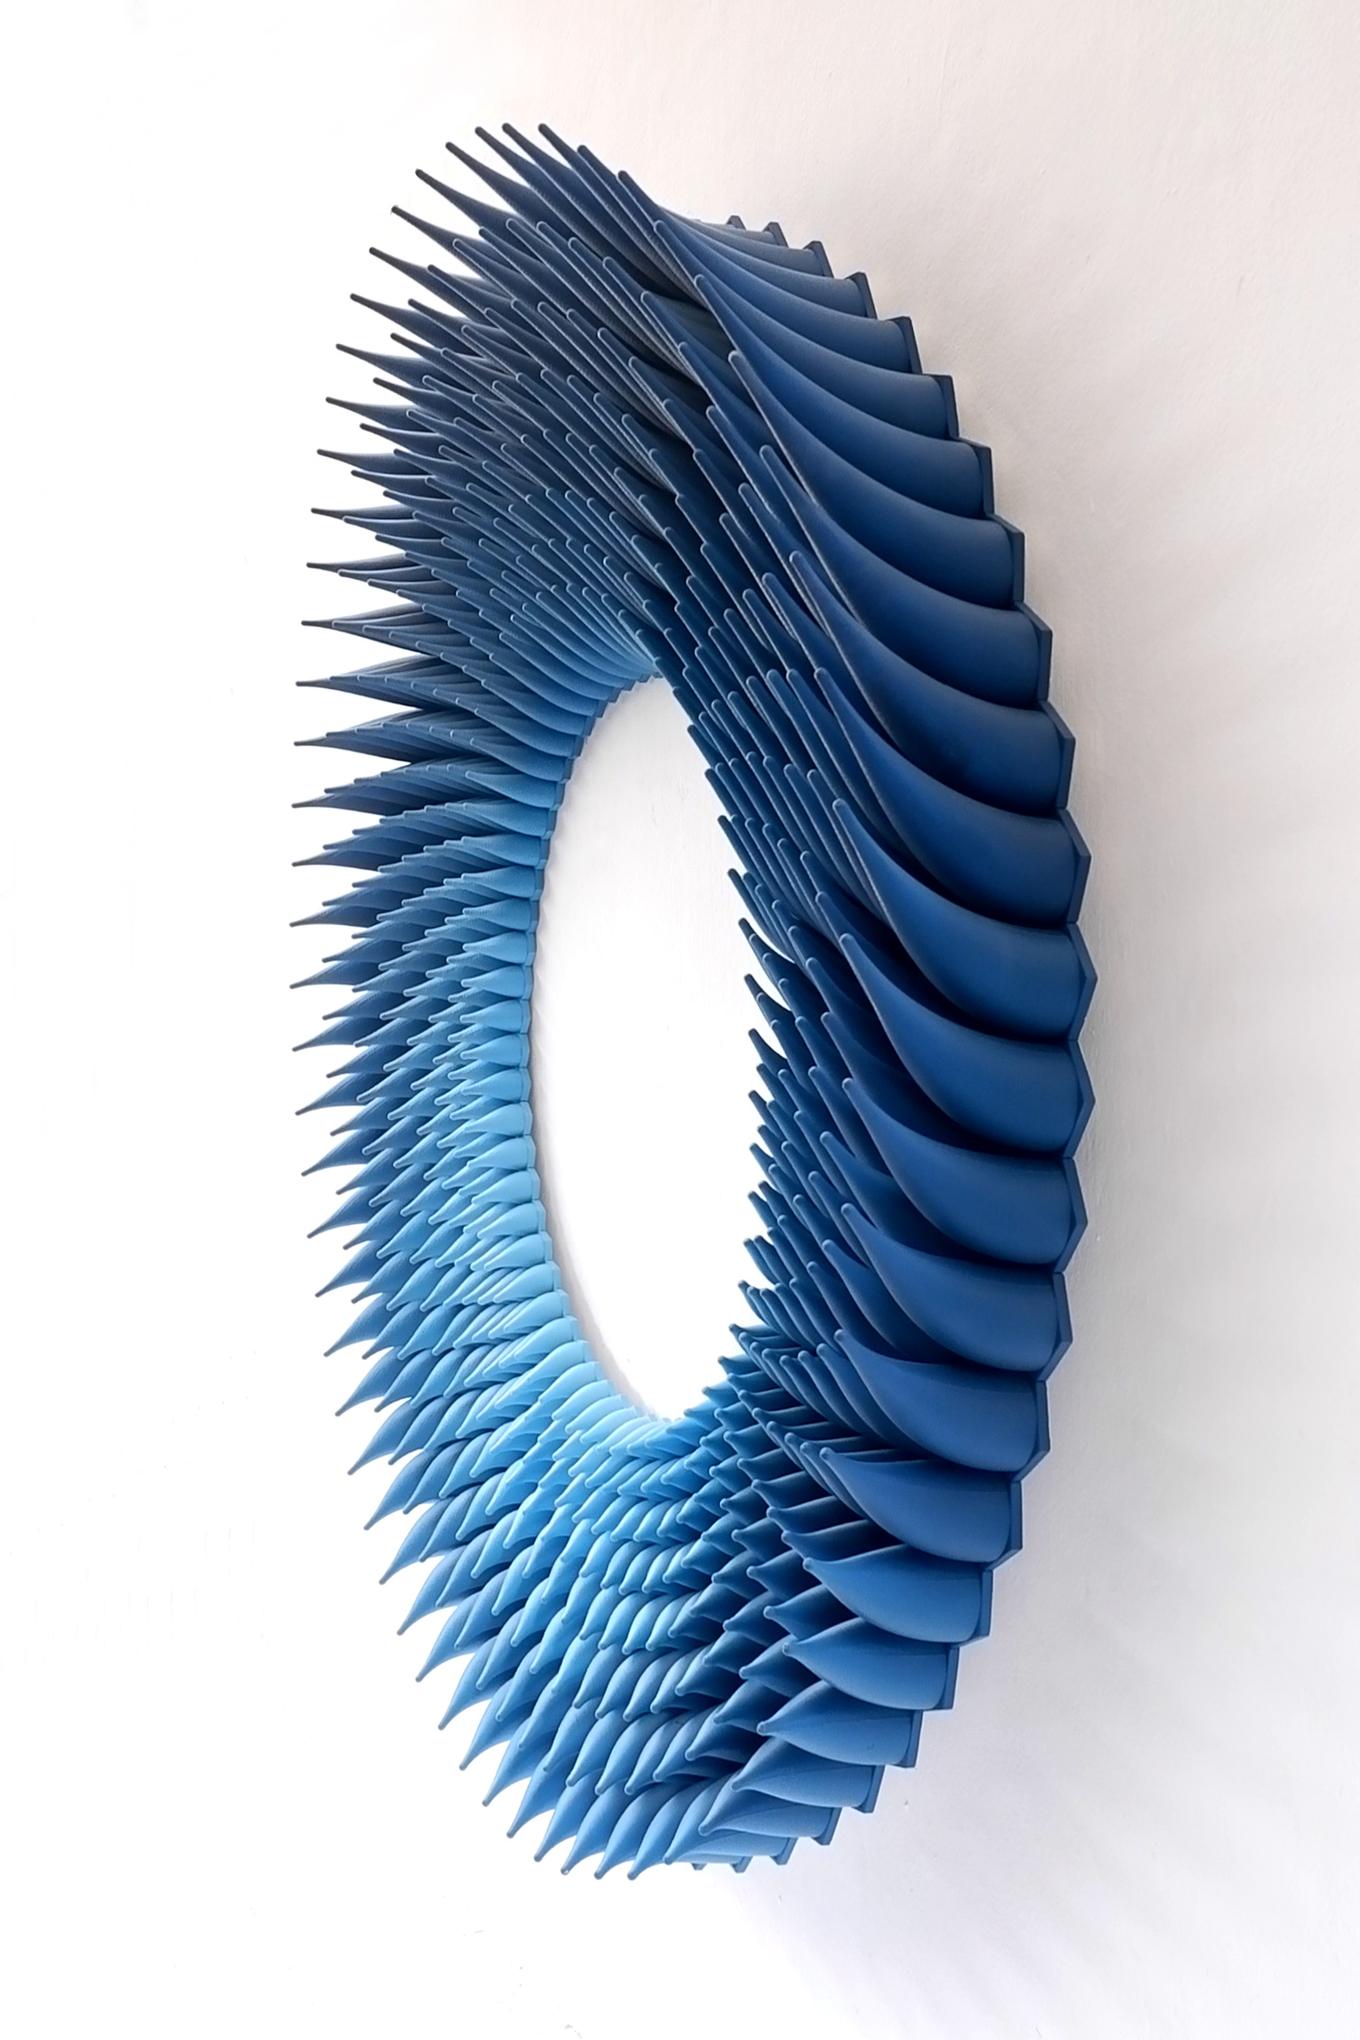 Jagged Loop | Herschel Shapiro | Modern Dimensional 3D Wall Art Mosaic 